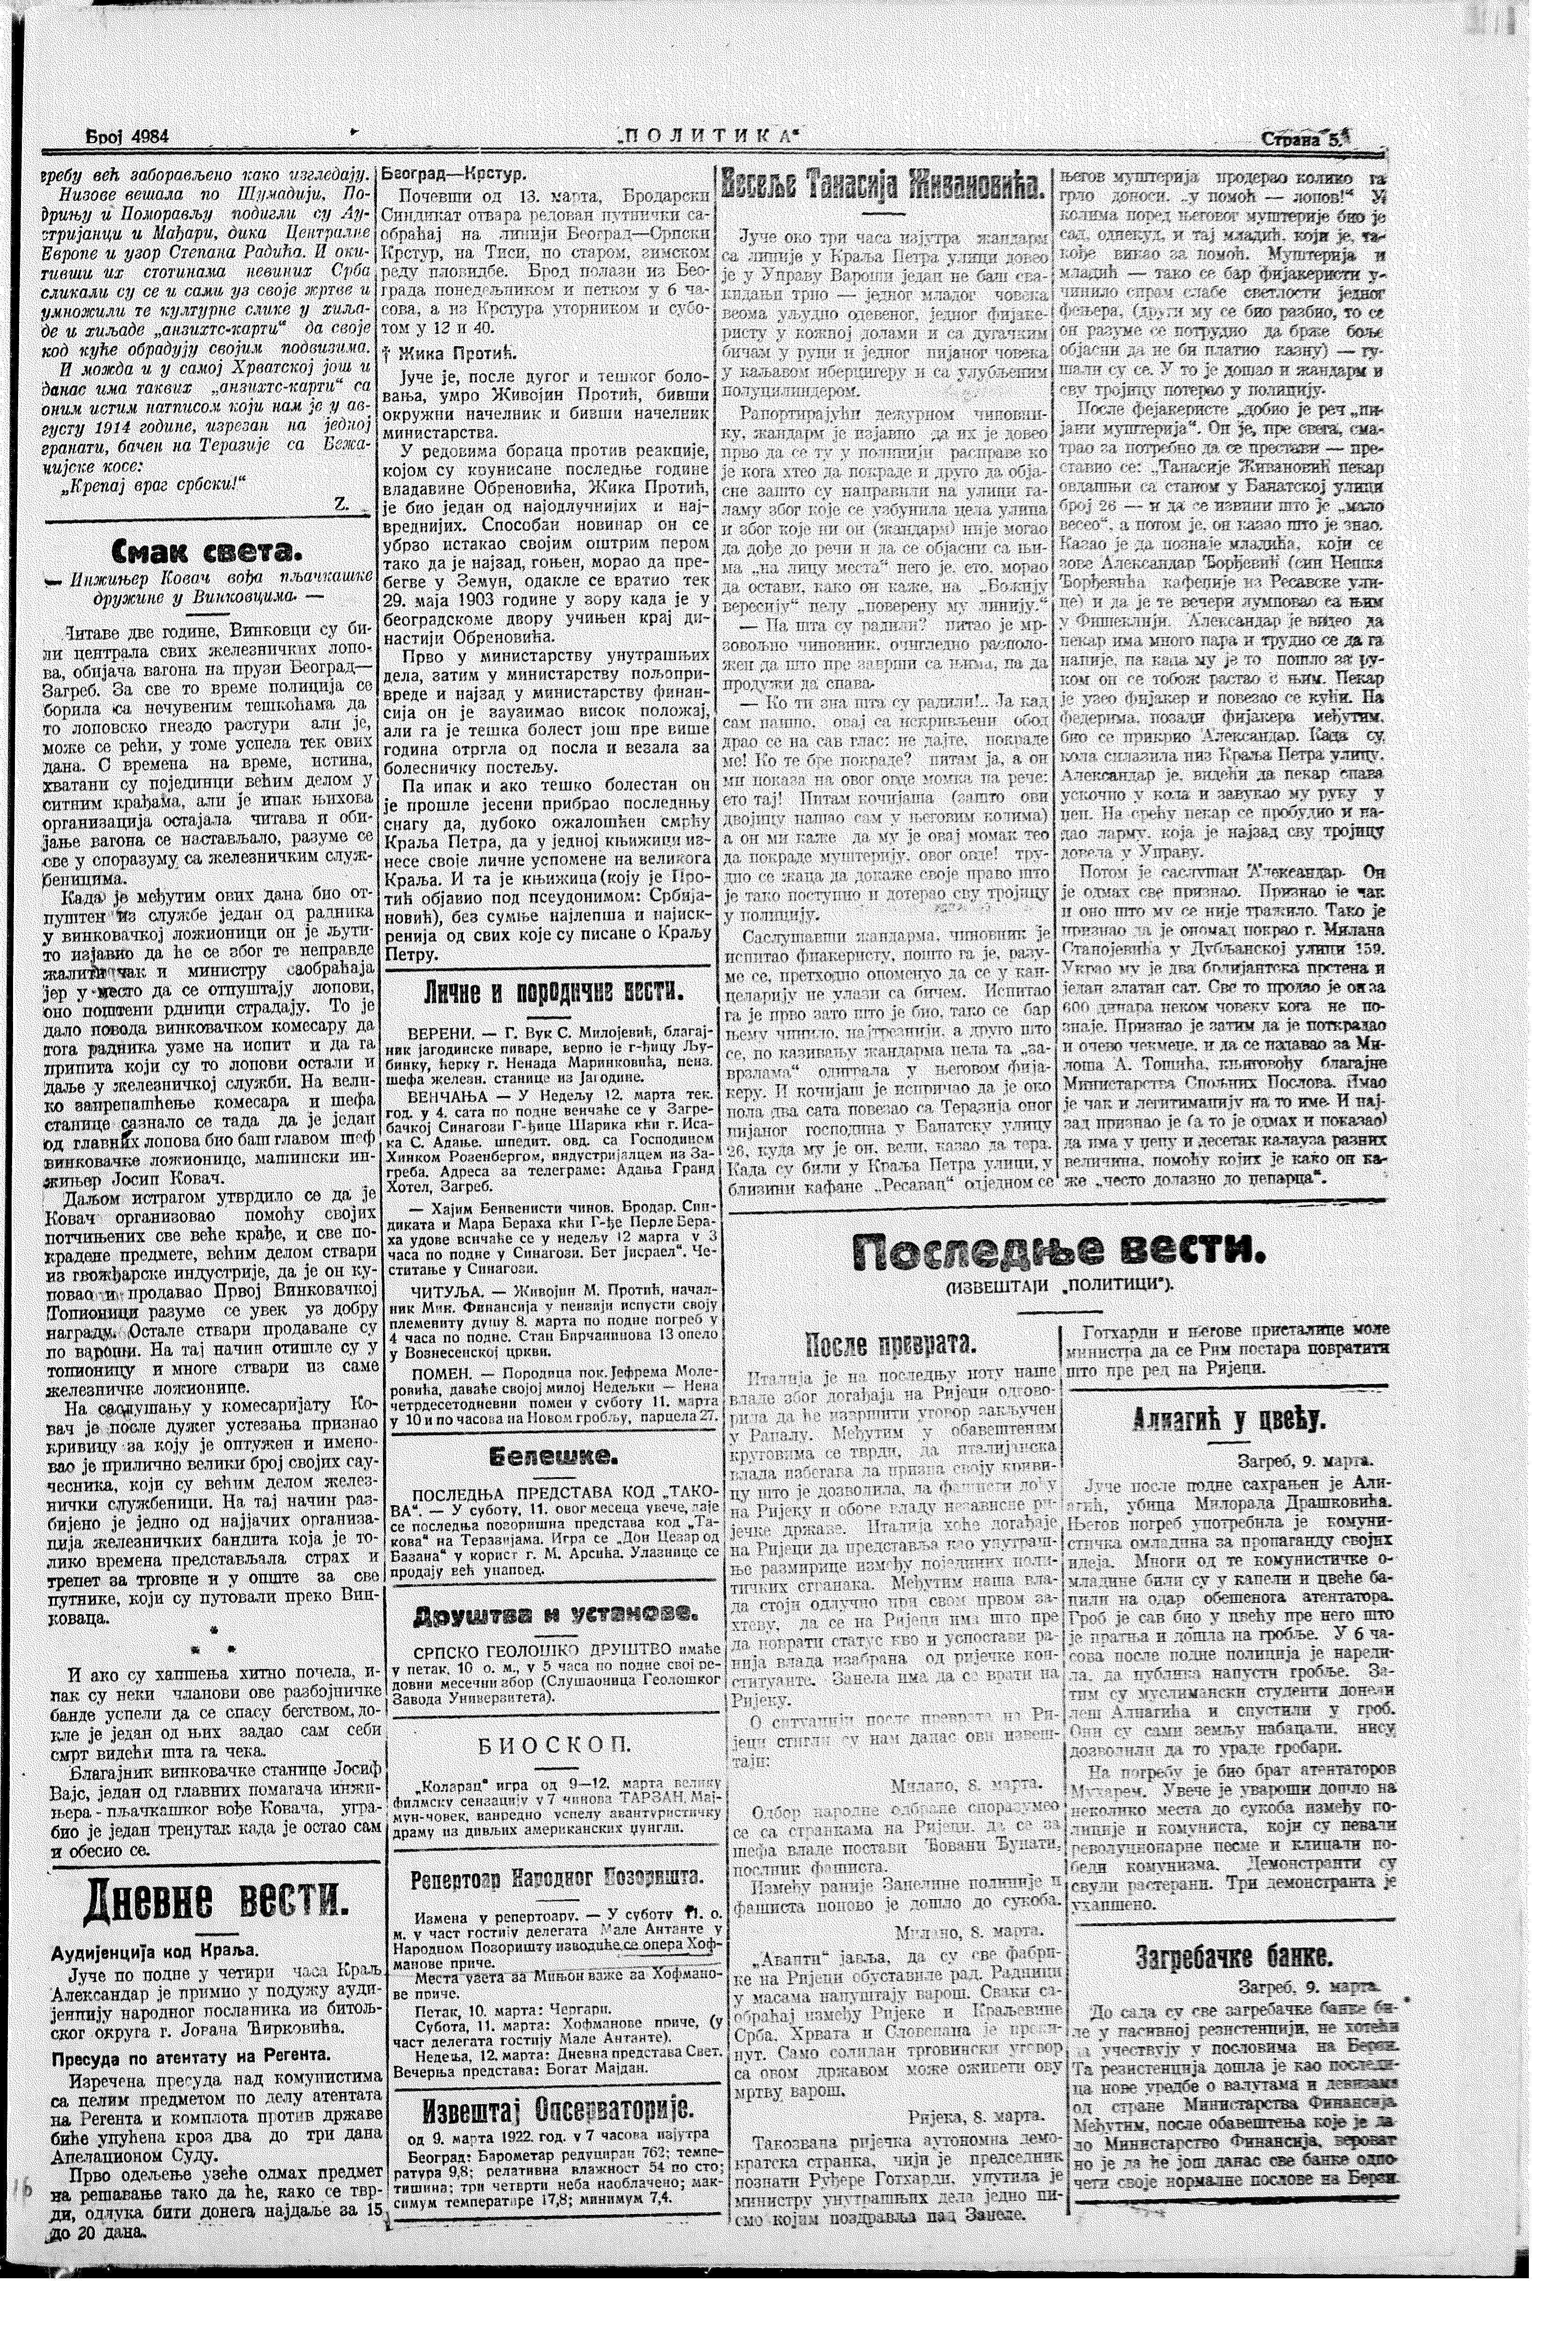 Aliagić u cveću, Politika, 09.03.1922